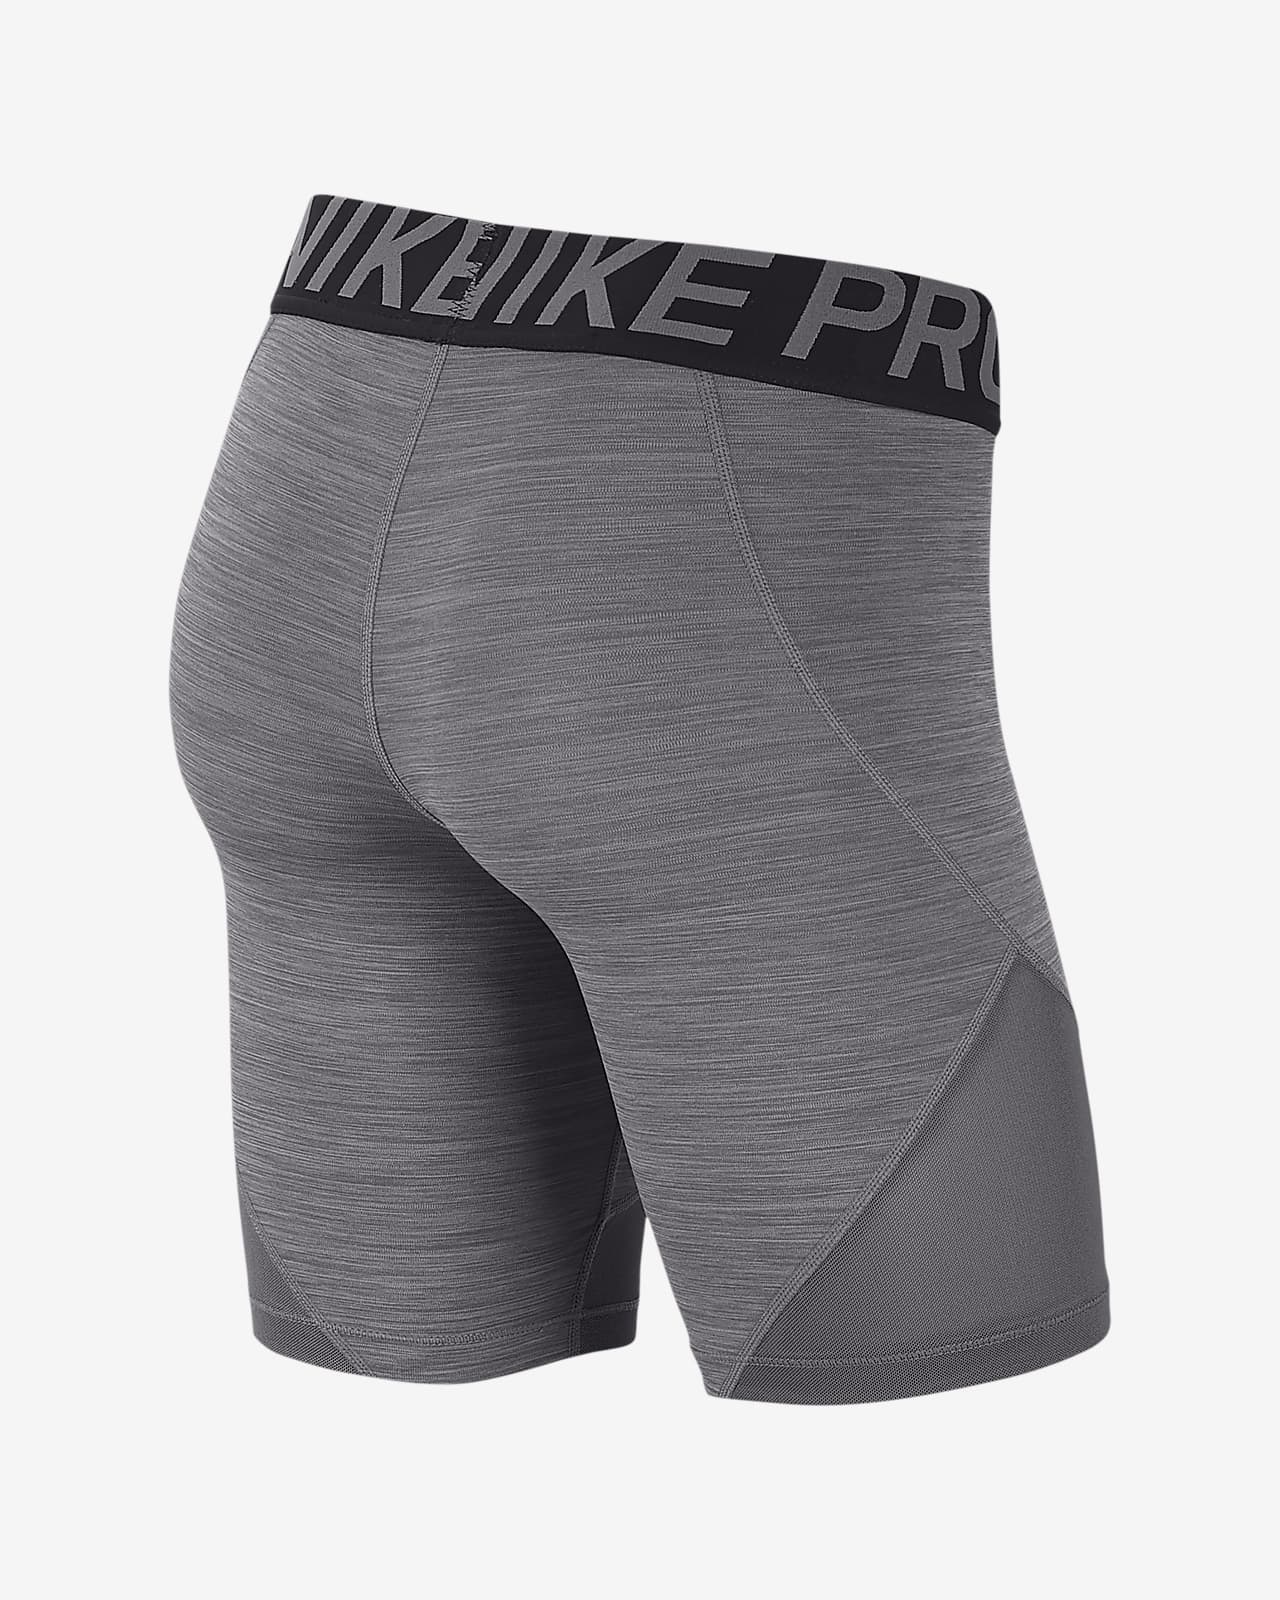 Shorts de 20 cm para mujer Nike Pro. Nike.com